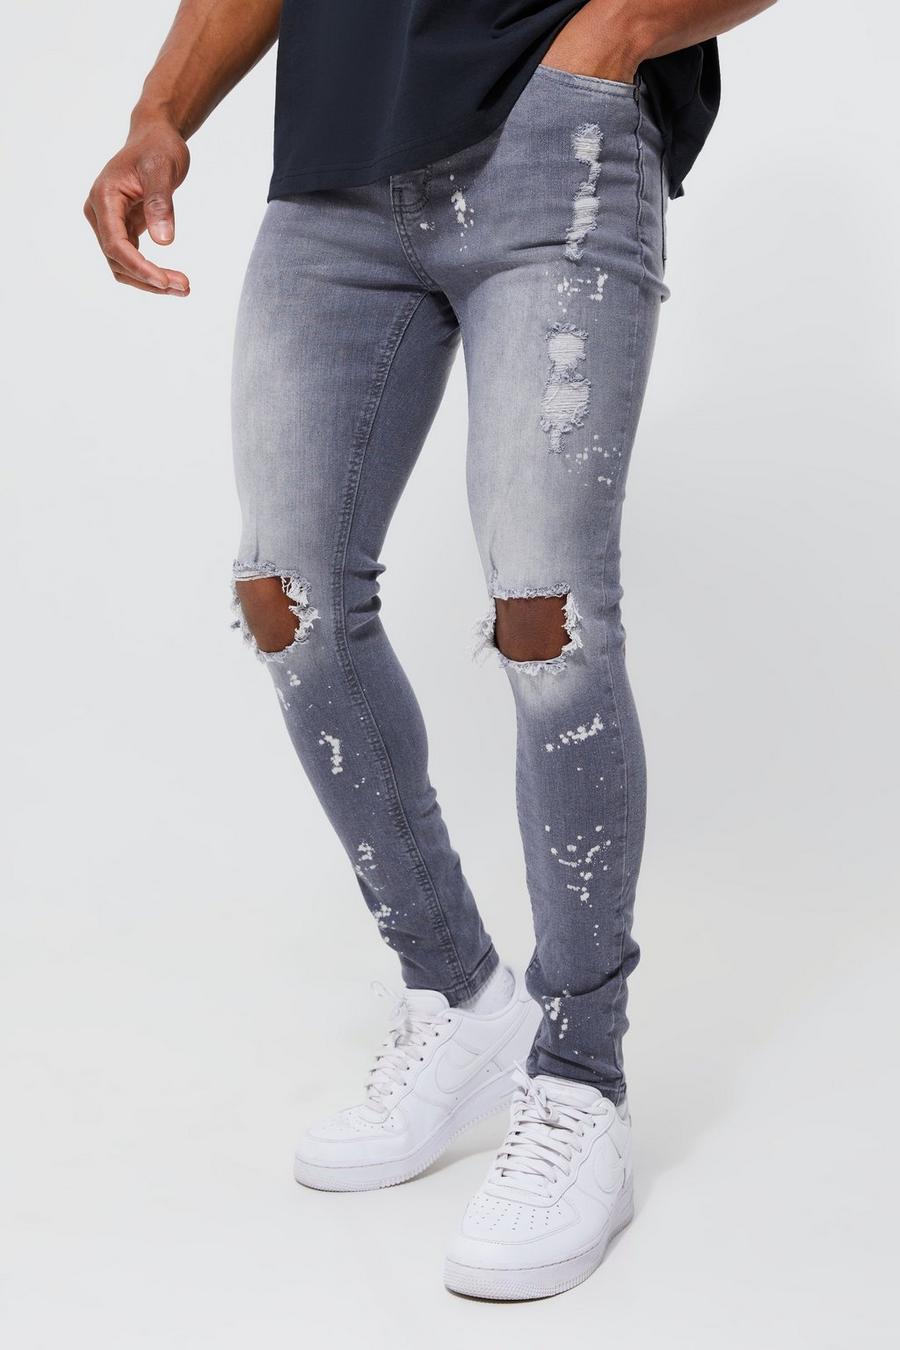 Super Skinny Jeans mit Farbspritzern und Riss am Knie, Mid grey grau